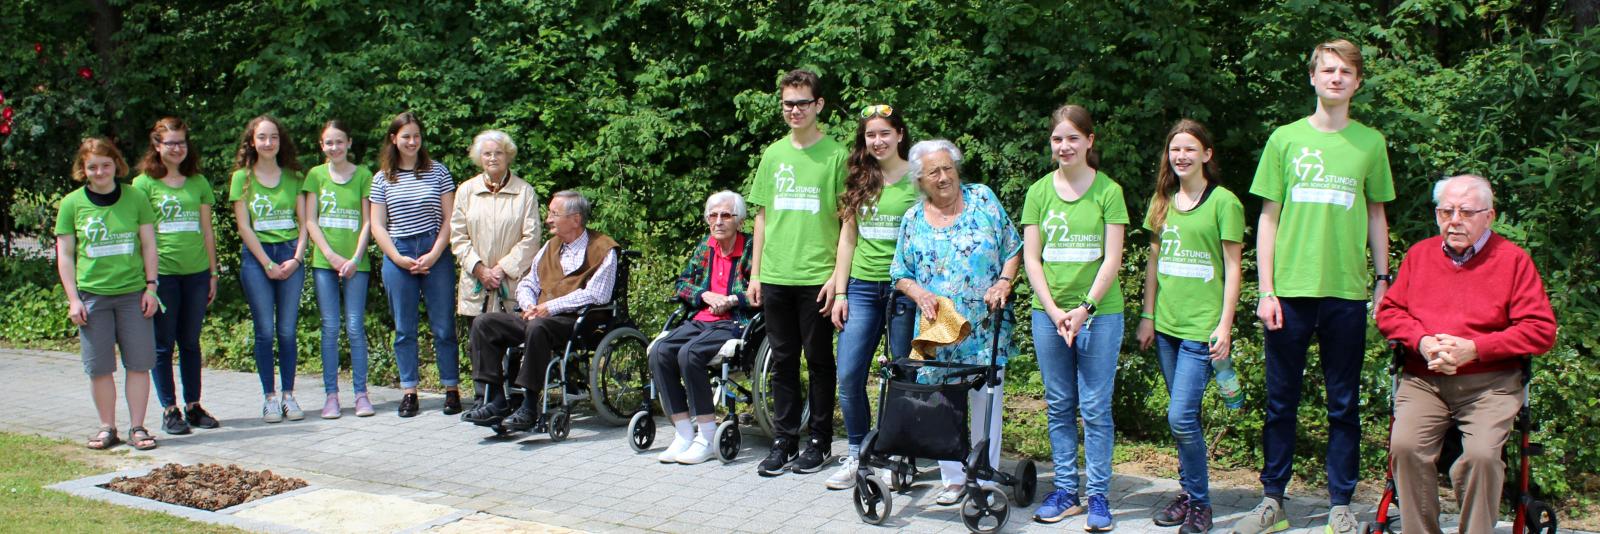 Mitglieder der  Jugendgruppe Bonifatius und Senioren der Kaiserbergklinik bei der 72-Stunden-Aktion 2019 (c) Bettina Fritz